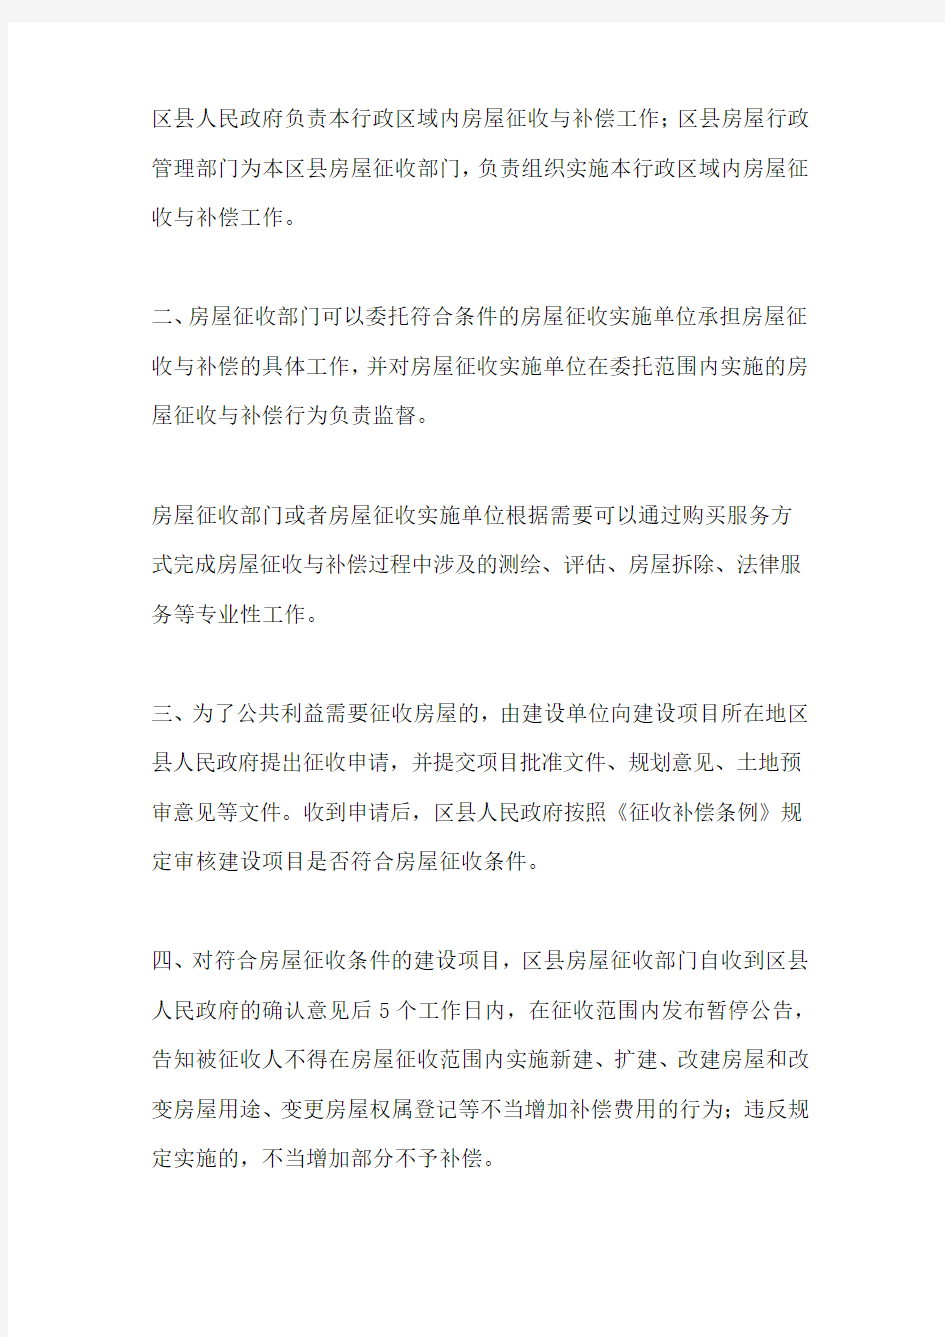 北京市人民政府文件